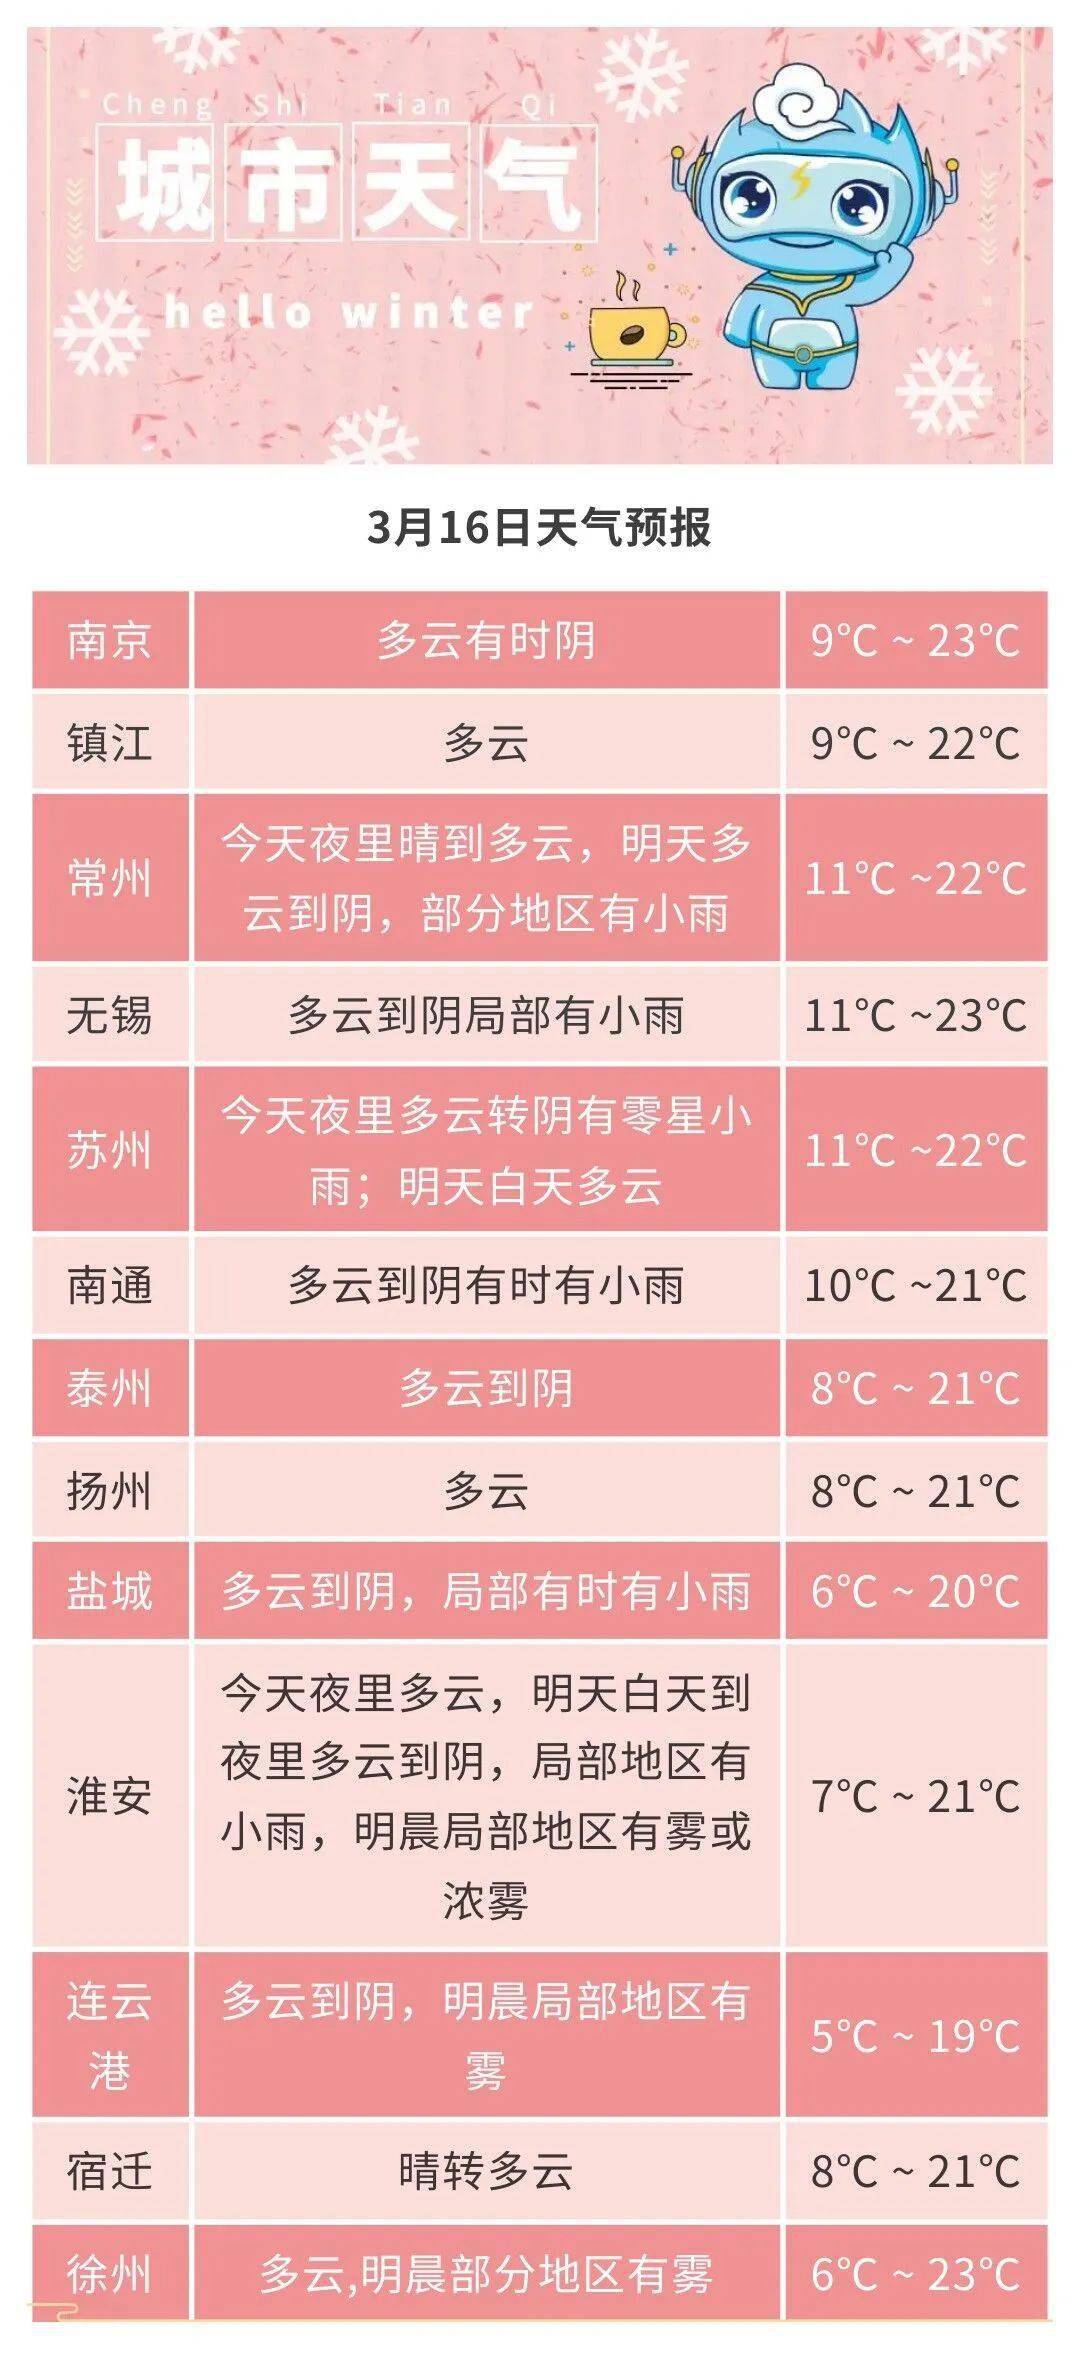 城市天气最高温度:沿淮和淮北地区11～12℃,其他地区9～10℃;最低温度